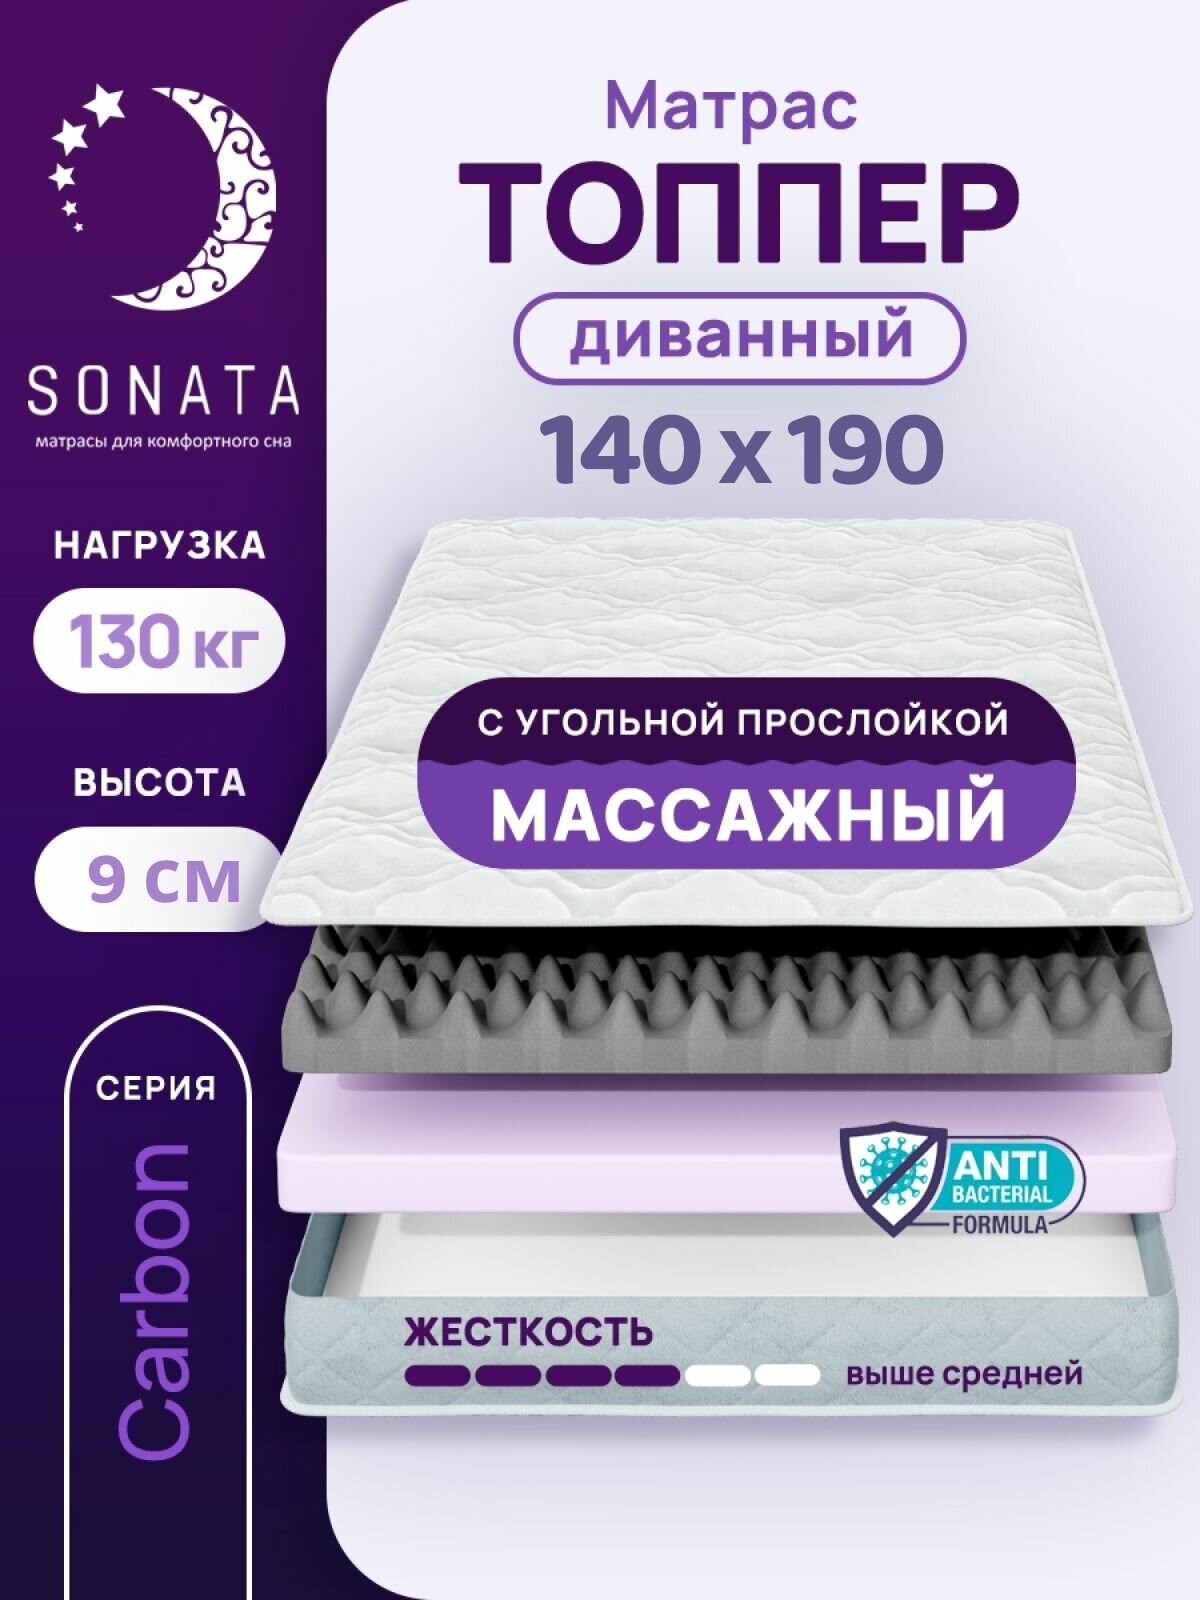 Топпер матрас 140х190 см SONATA, ортопедический, беспружинный, двуспальный, тонкий матрац для дивана, кровати, высота 9 см с массажным эффектом